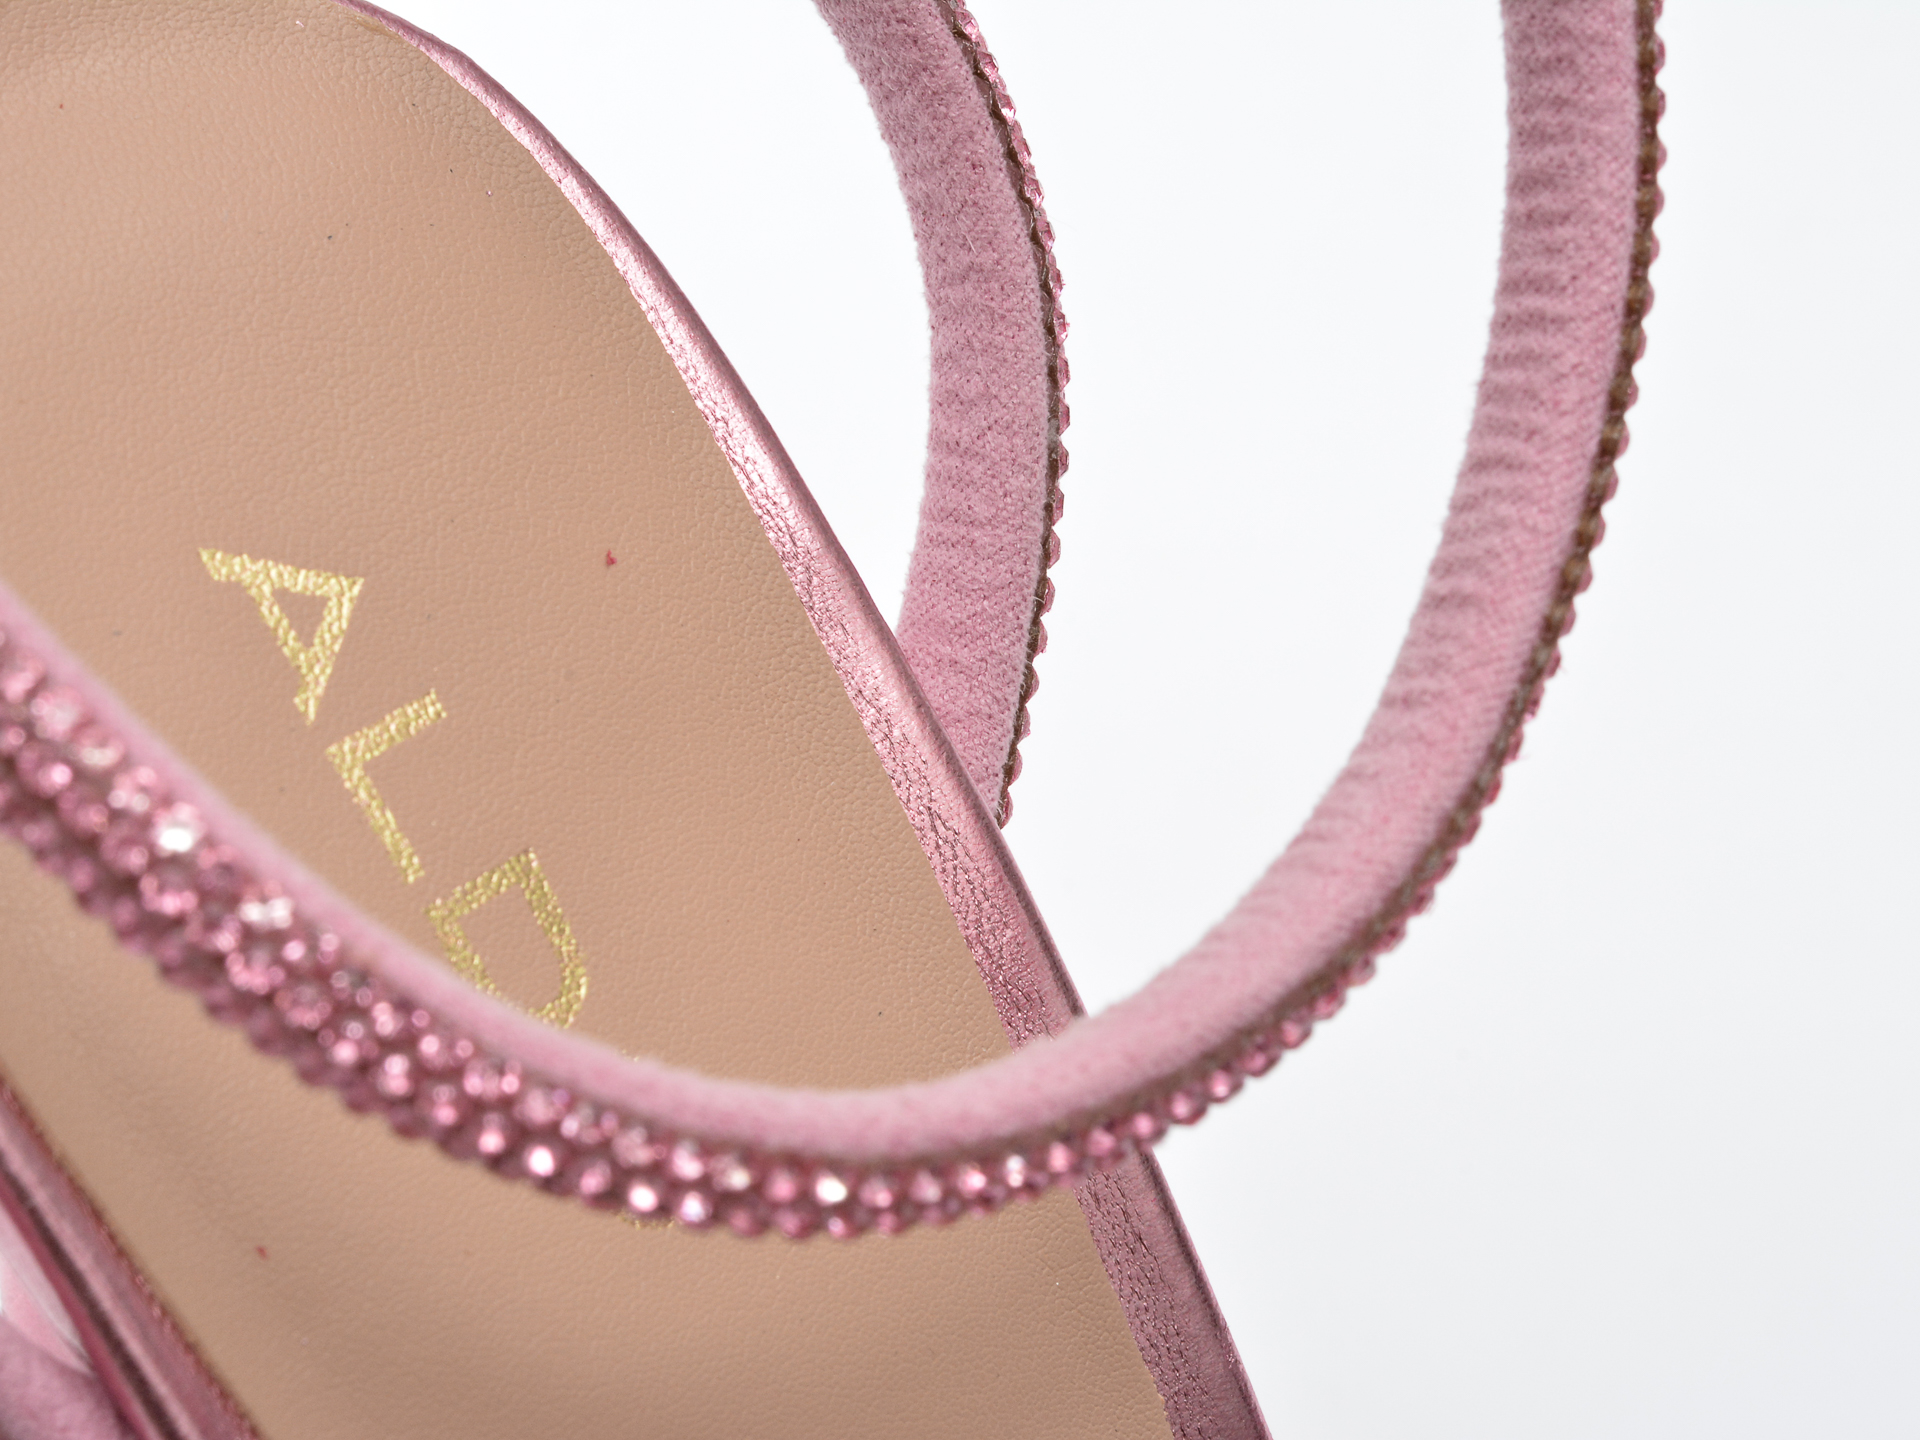 Poze Sandale ALDO roz, DOMENICA650, din material textil otter.ro